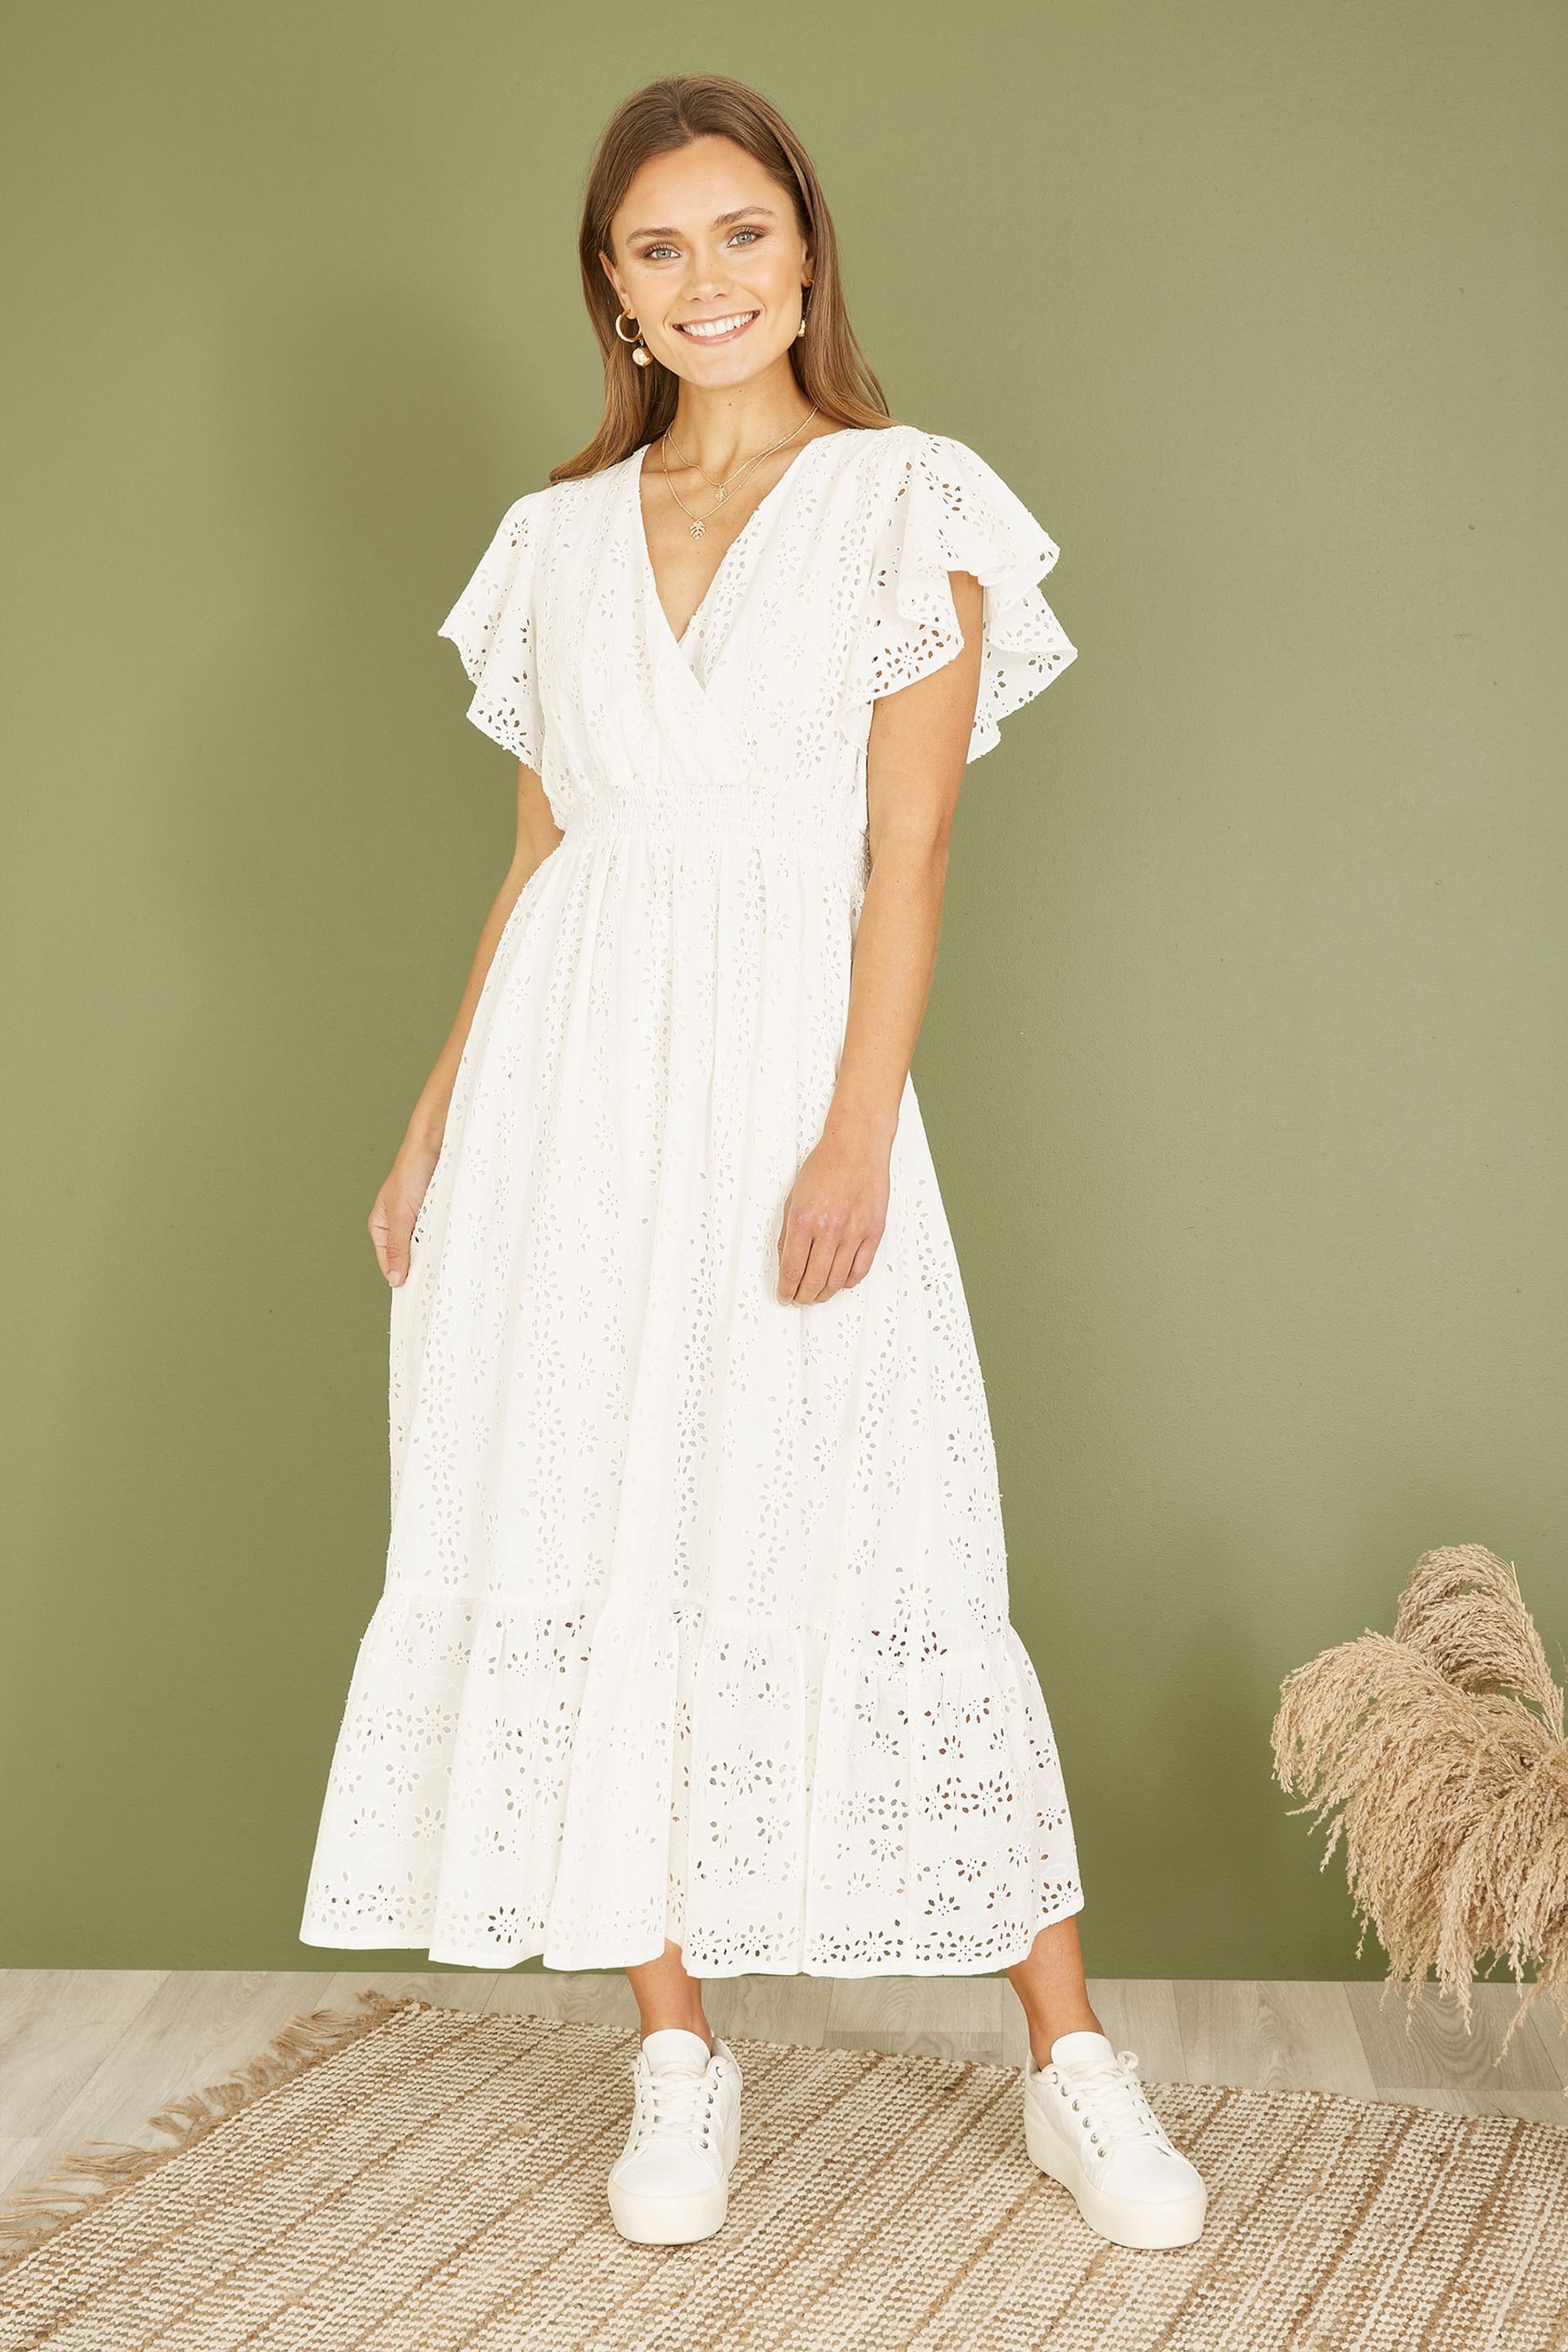 Mela White Cotton Broderie Anglaise Wrap Midi Dress - Image 1 of 5